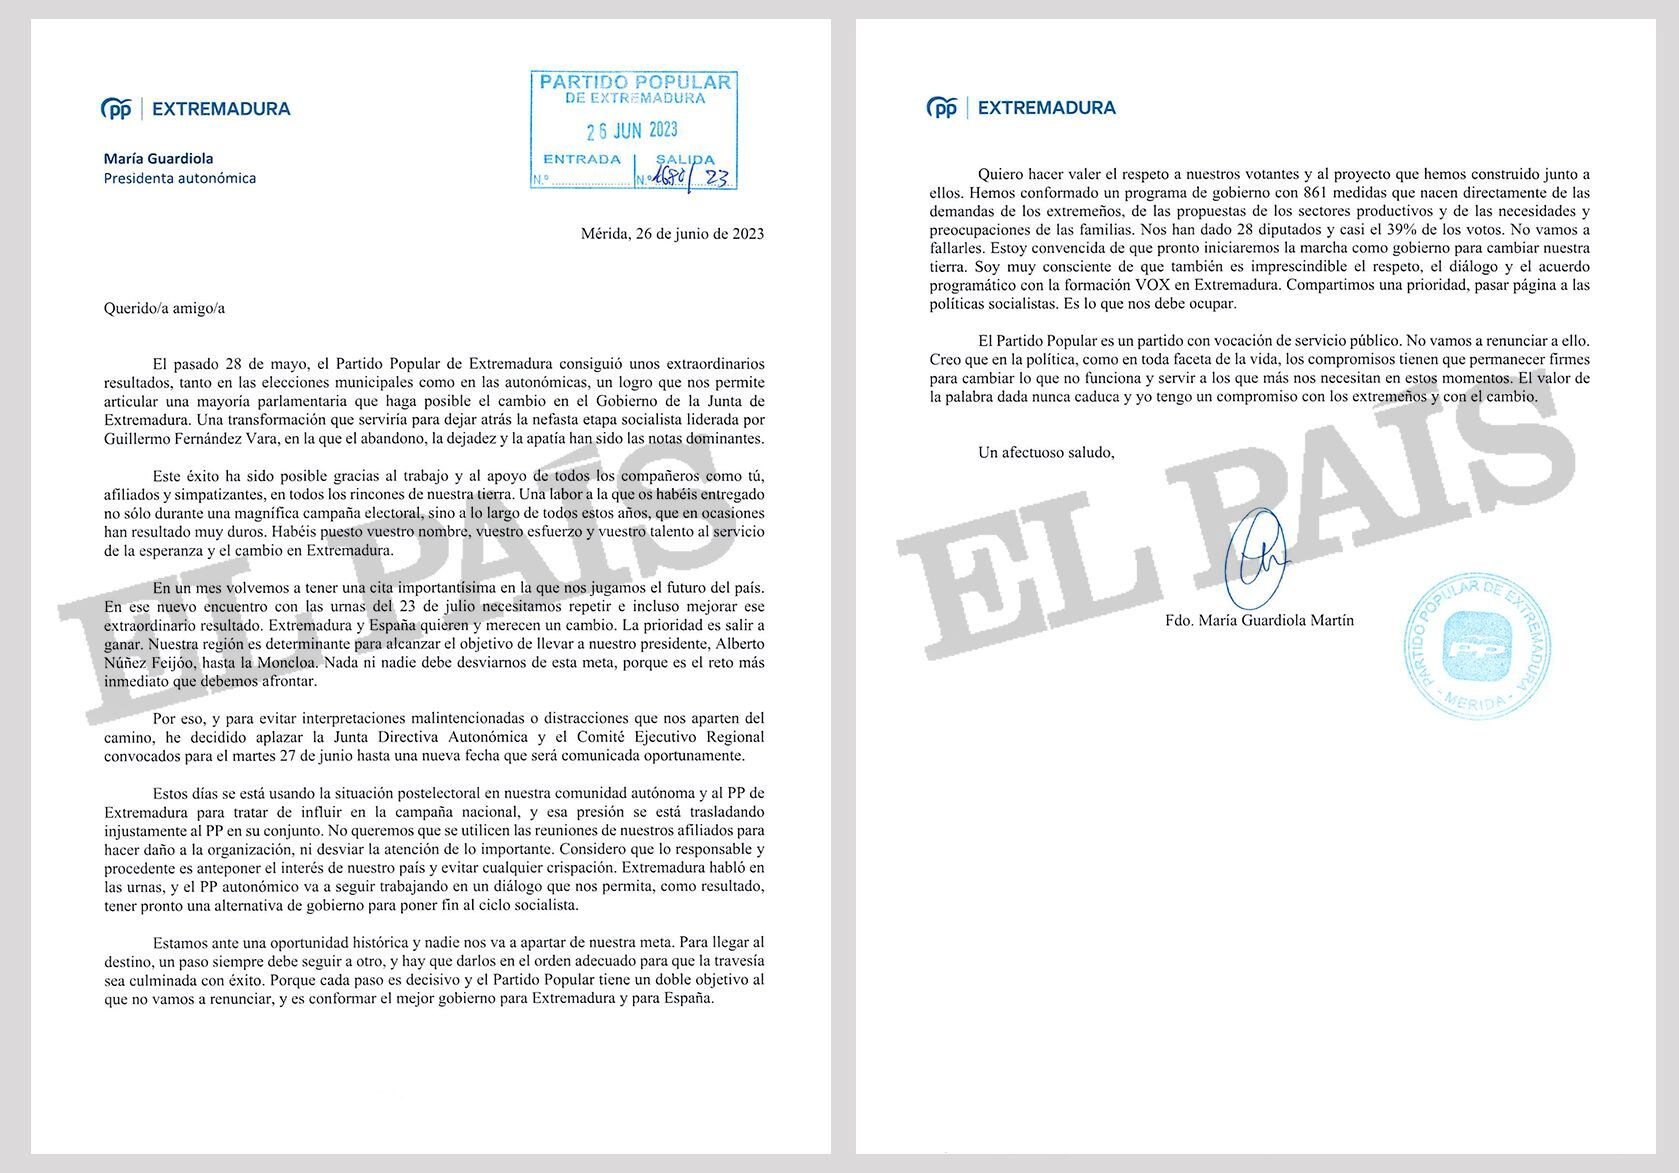 Carta enviada por María Guardiola a los militantes del PP de Extremadura.